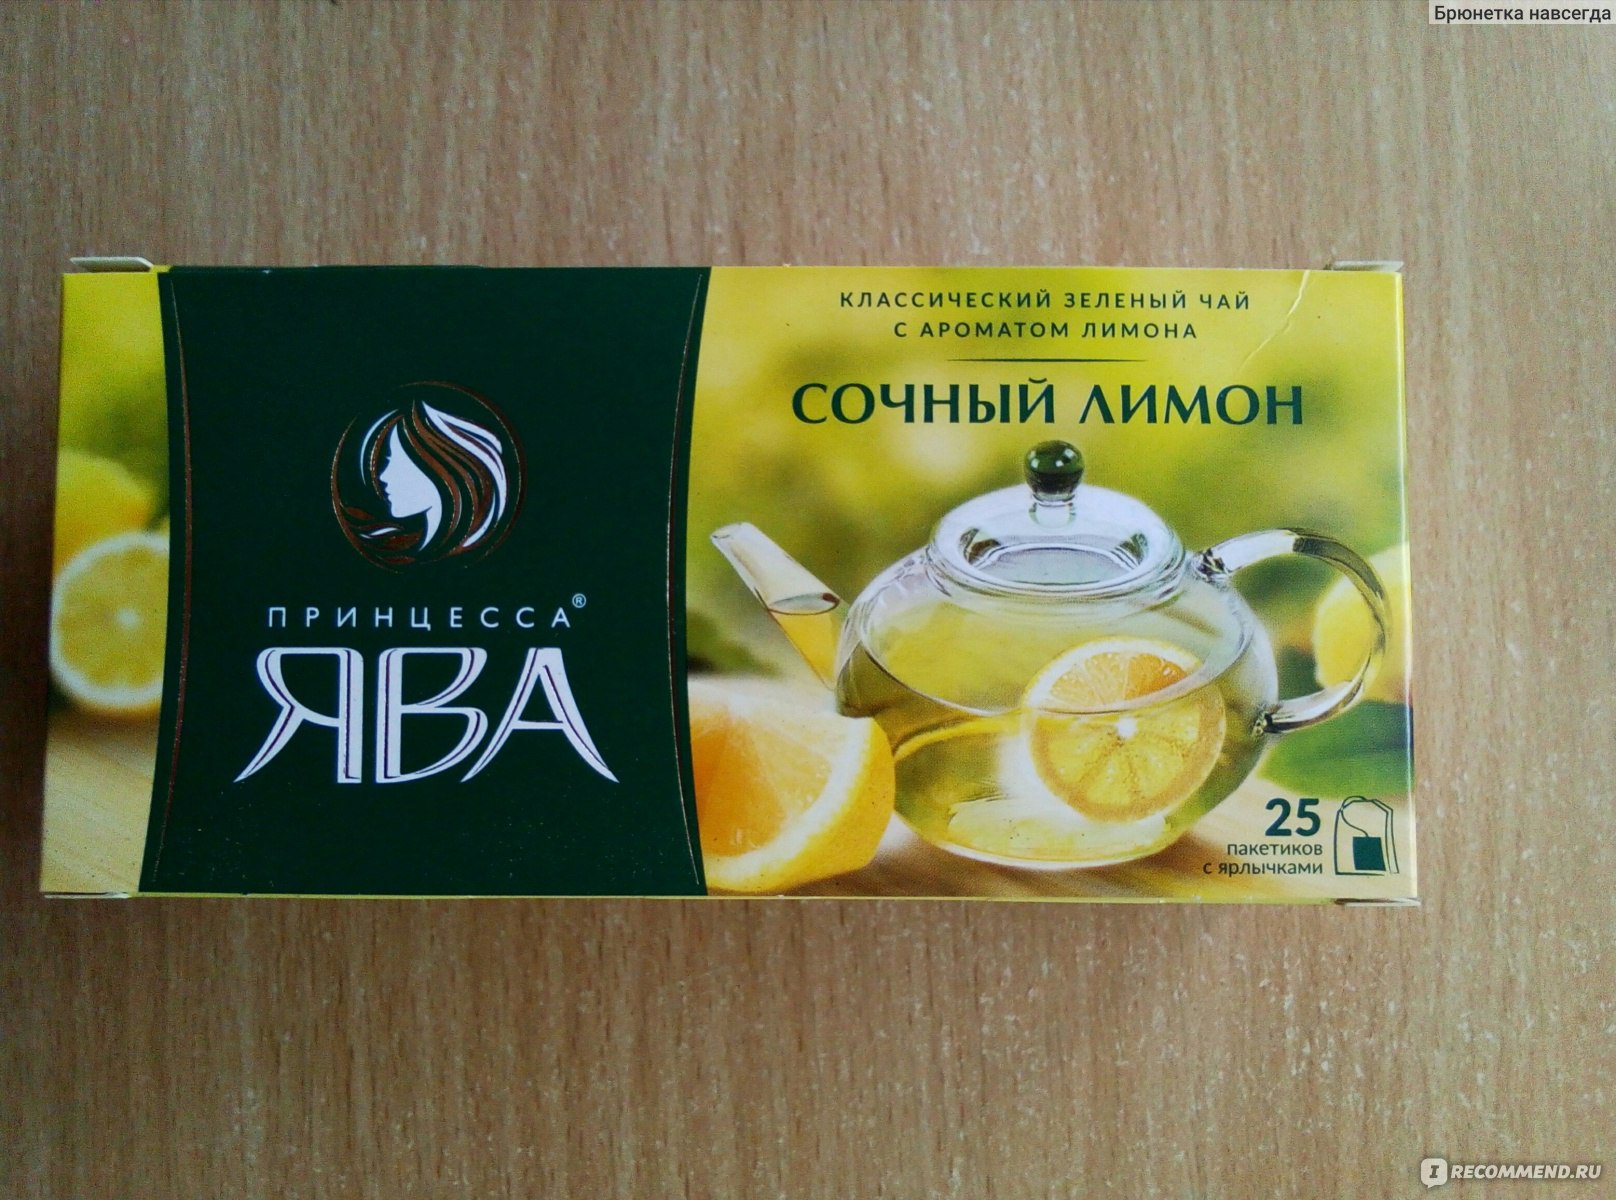 Чай зеленый Принцесса ява "Сочный лимон" в пакетиках фото